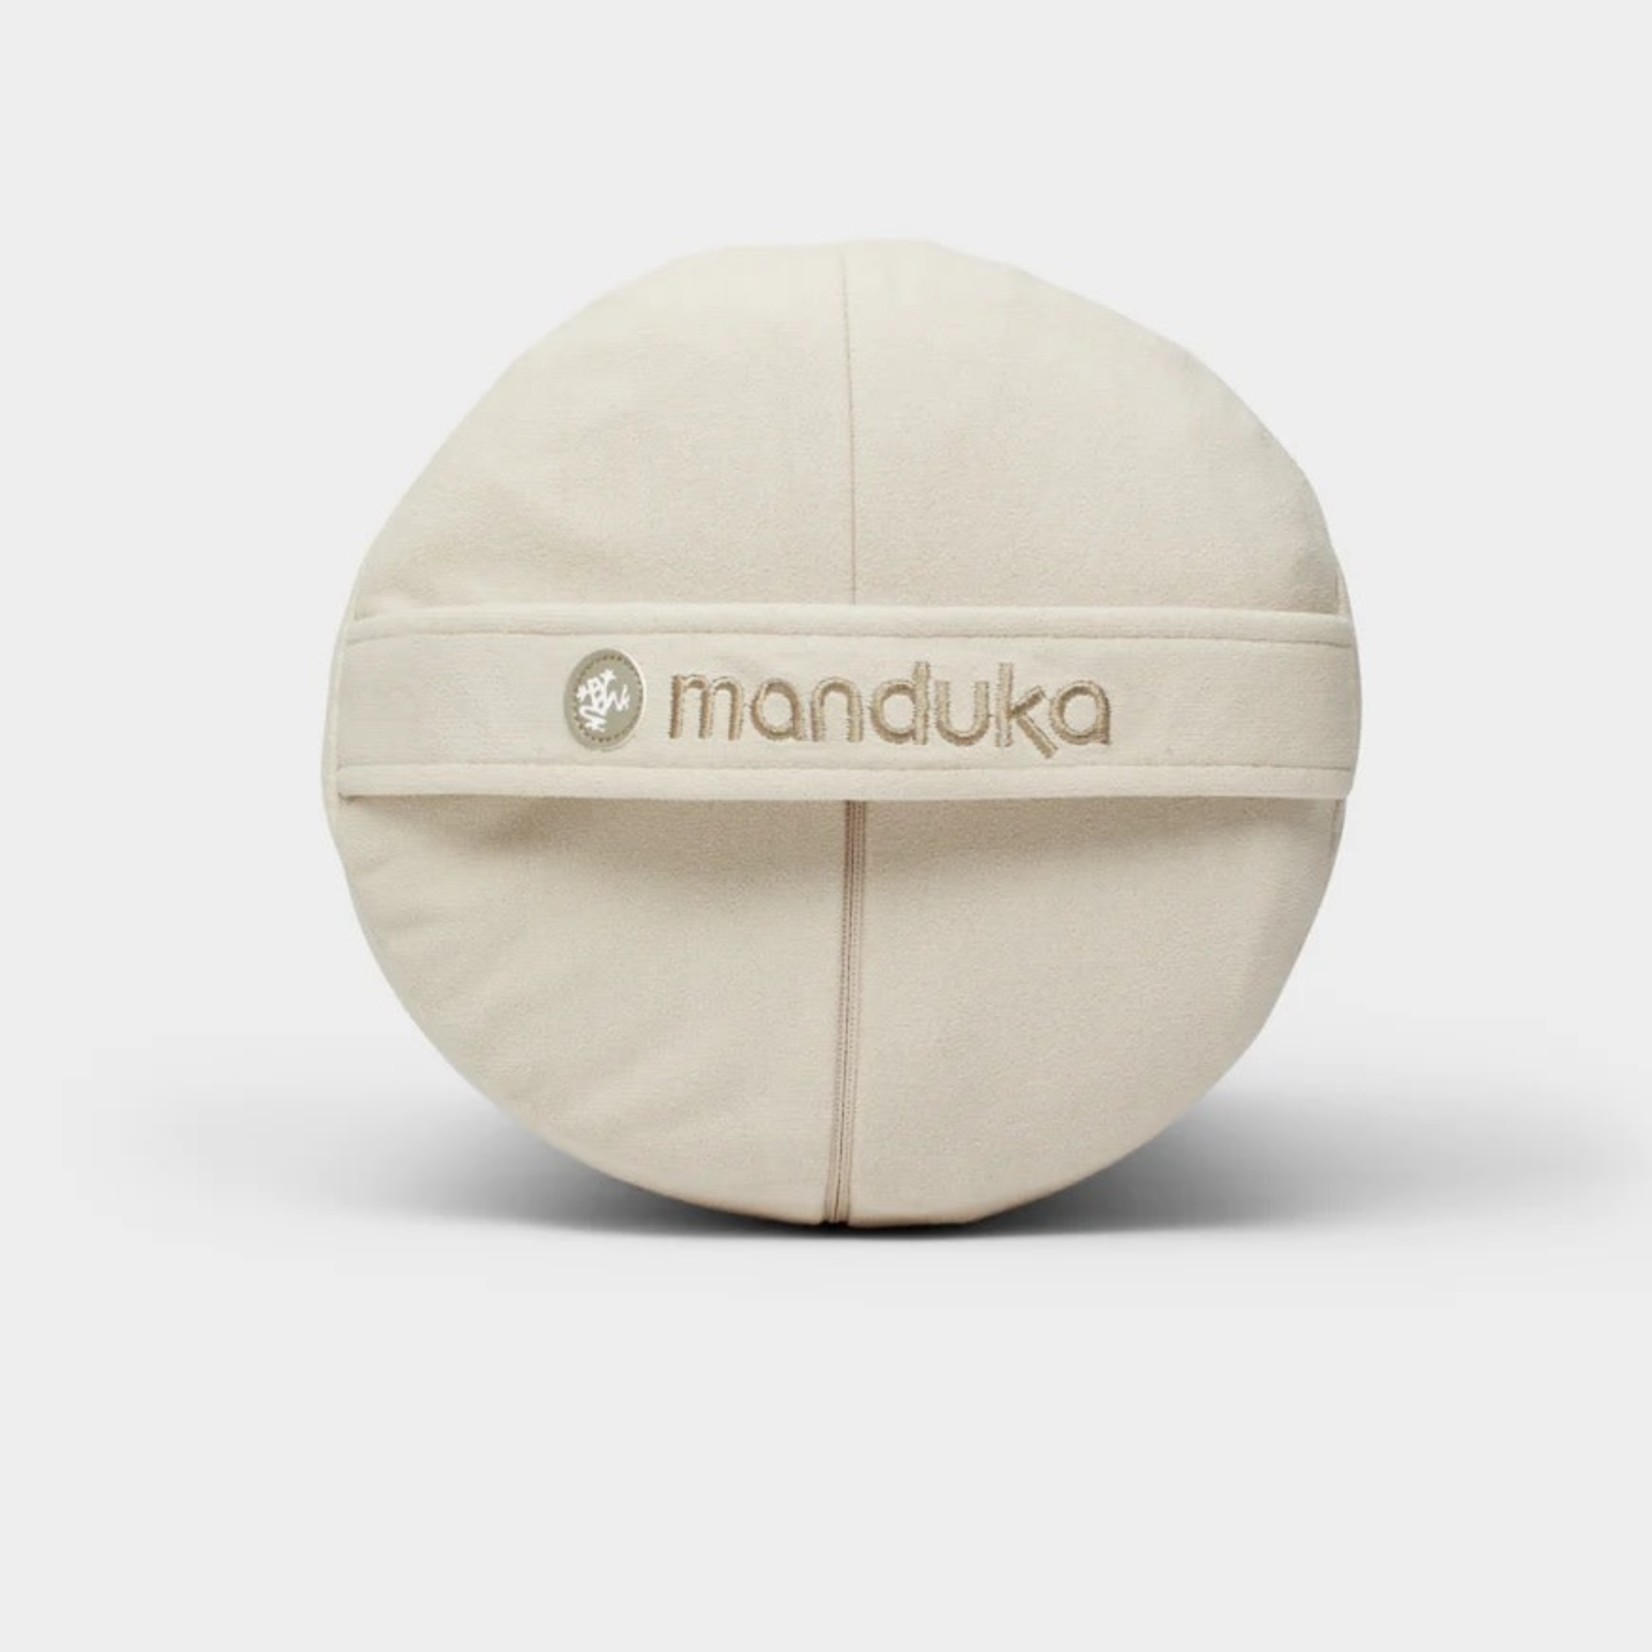 Manduka Bolsters-round-Sand